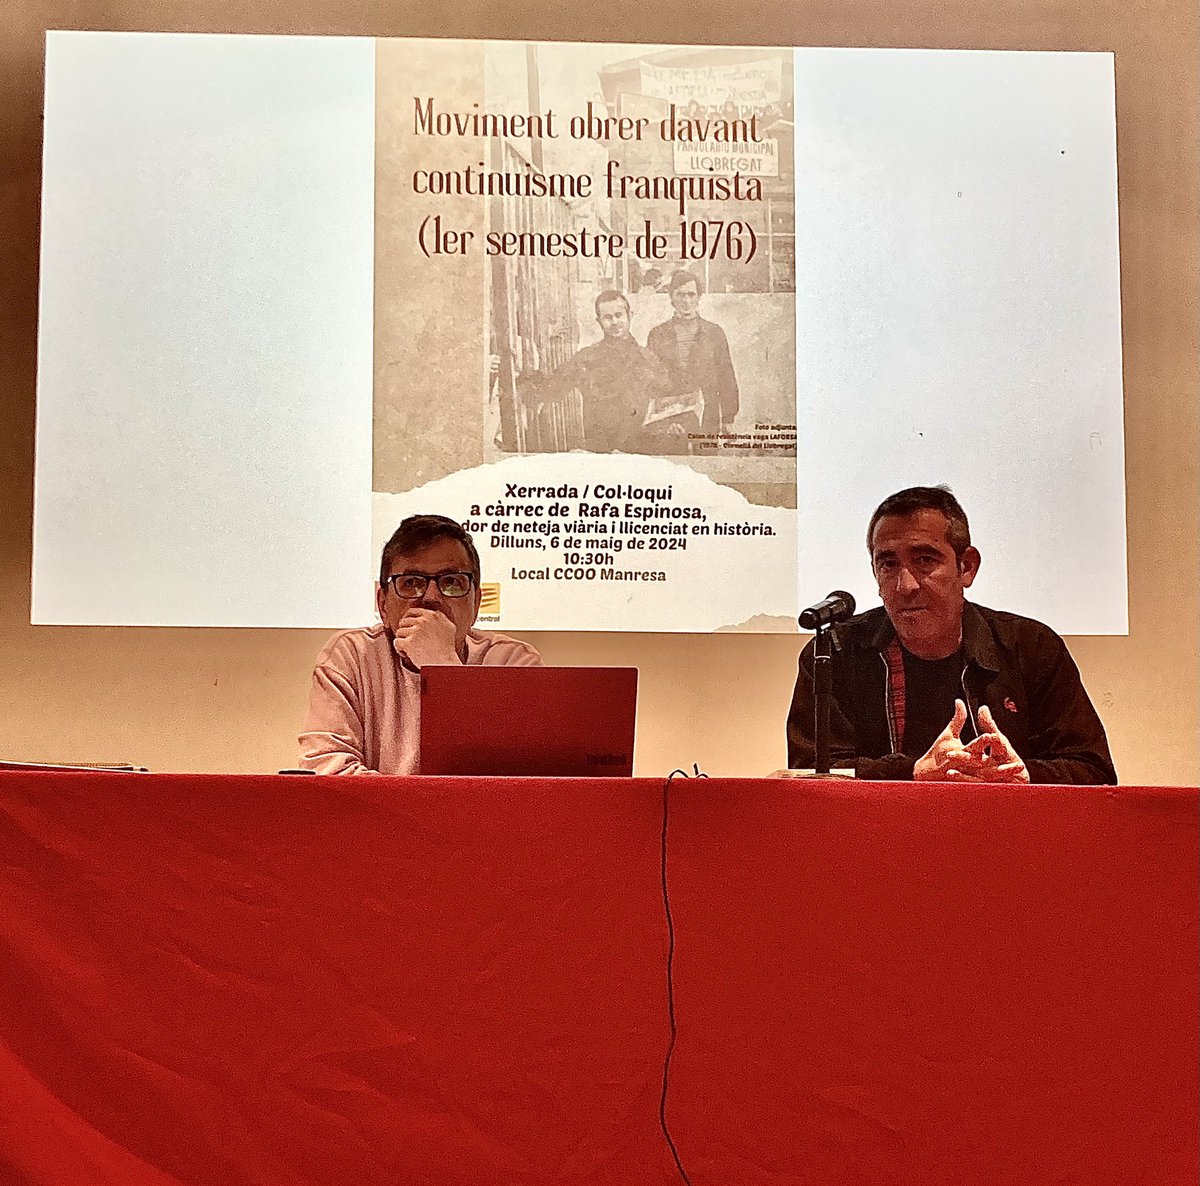 Iniciem el darrer acte de la setmana cultural del 1r de maig a Manresa organitzada per @ccoo_vocc_catc. Avui amb la xerrada de @RafaEspinosa15 sobre el moviment obrer davant continuisme franquista (1er semestre de 1976)